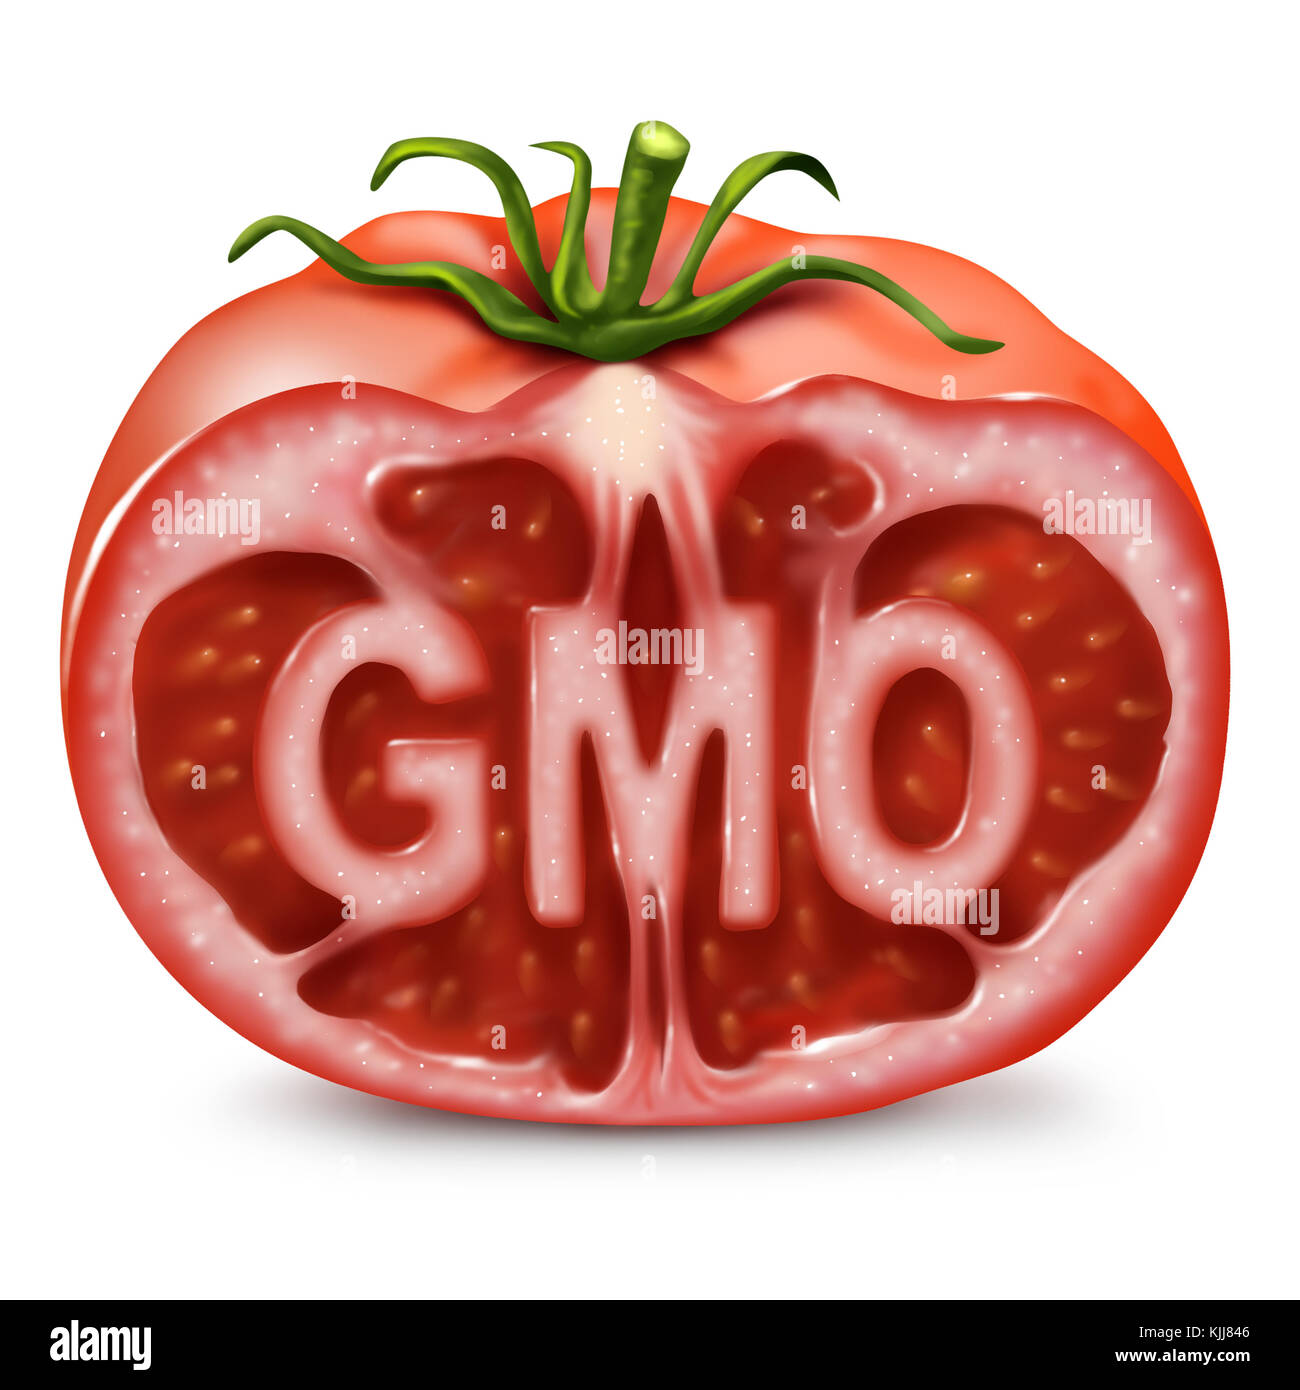 Gli alimenti OGM simbolo come un organismo geneticamente modificato e dell' ingegneria genetica nella produzione come un pomodoro tagliato con il testo all'interno come in un 3d illustrazione dello stile. Foto Stock